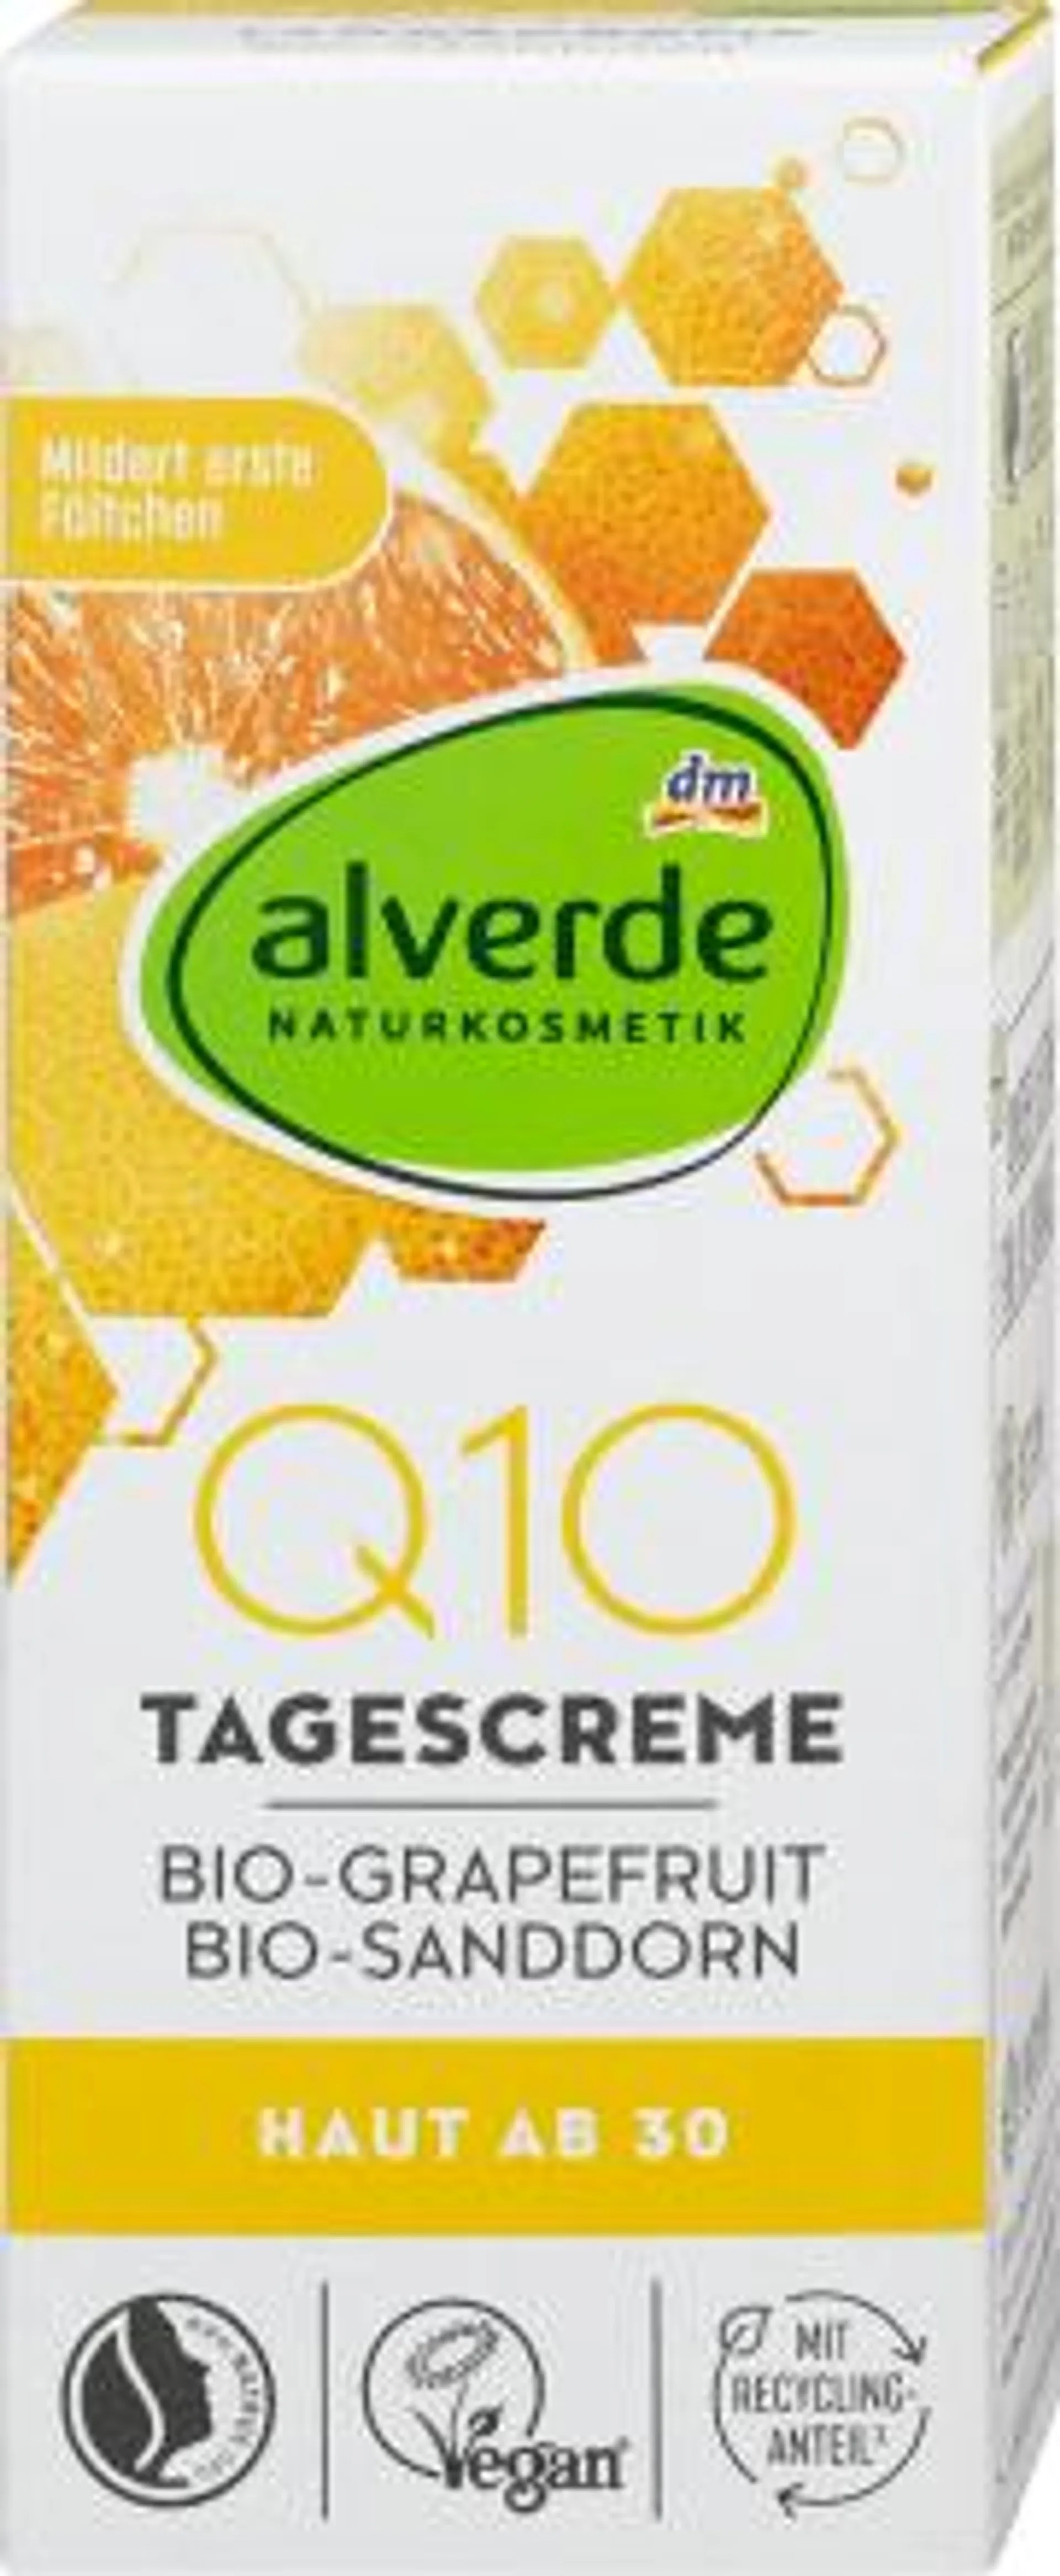 Denný pleťový krém Q10 s bio grapefruitom a bio rakytníkom rešetliakovým, 50 ml